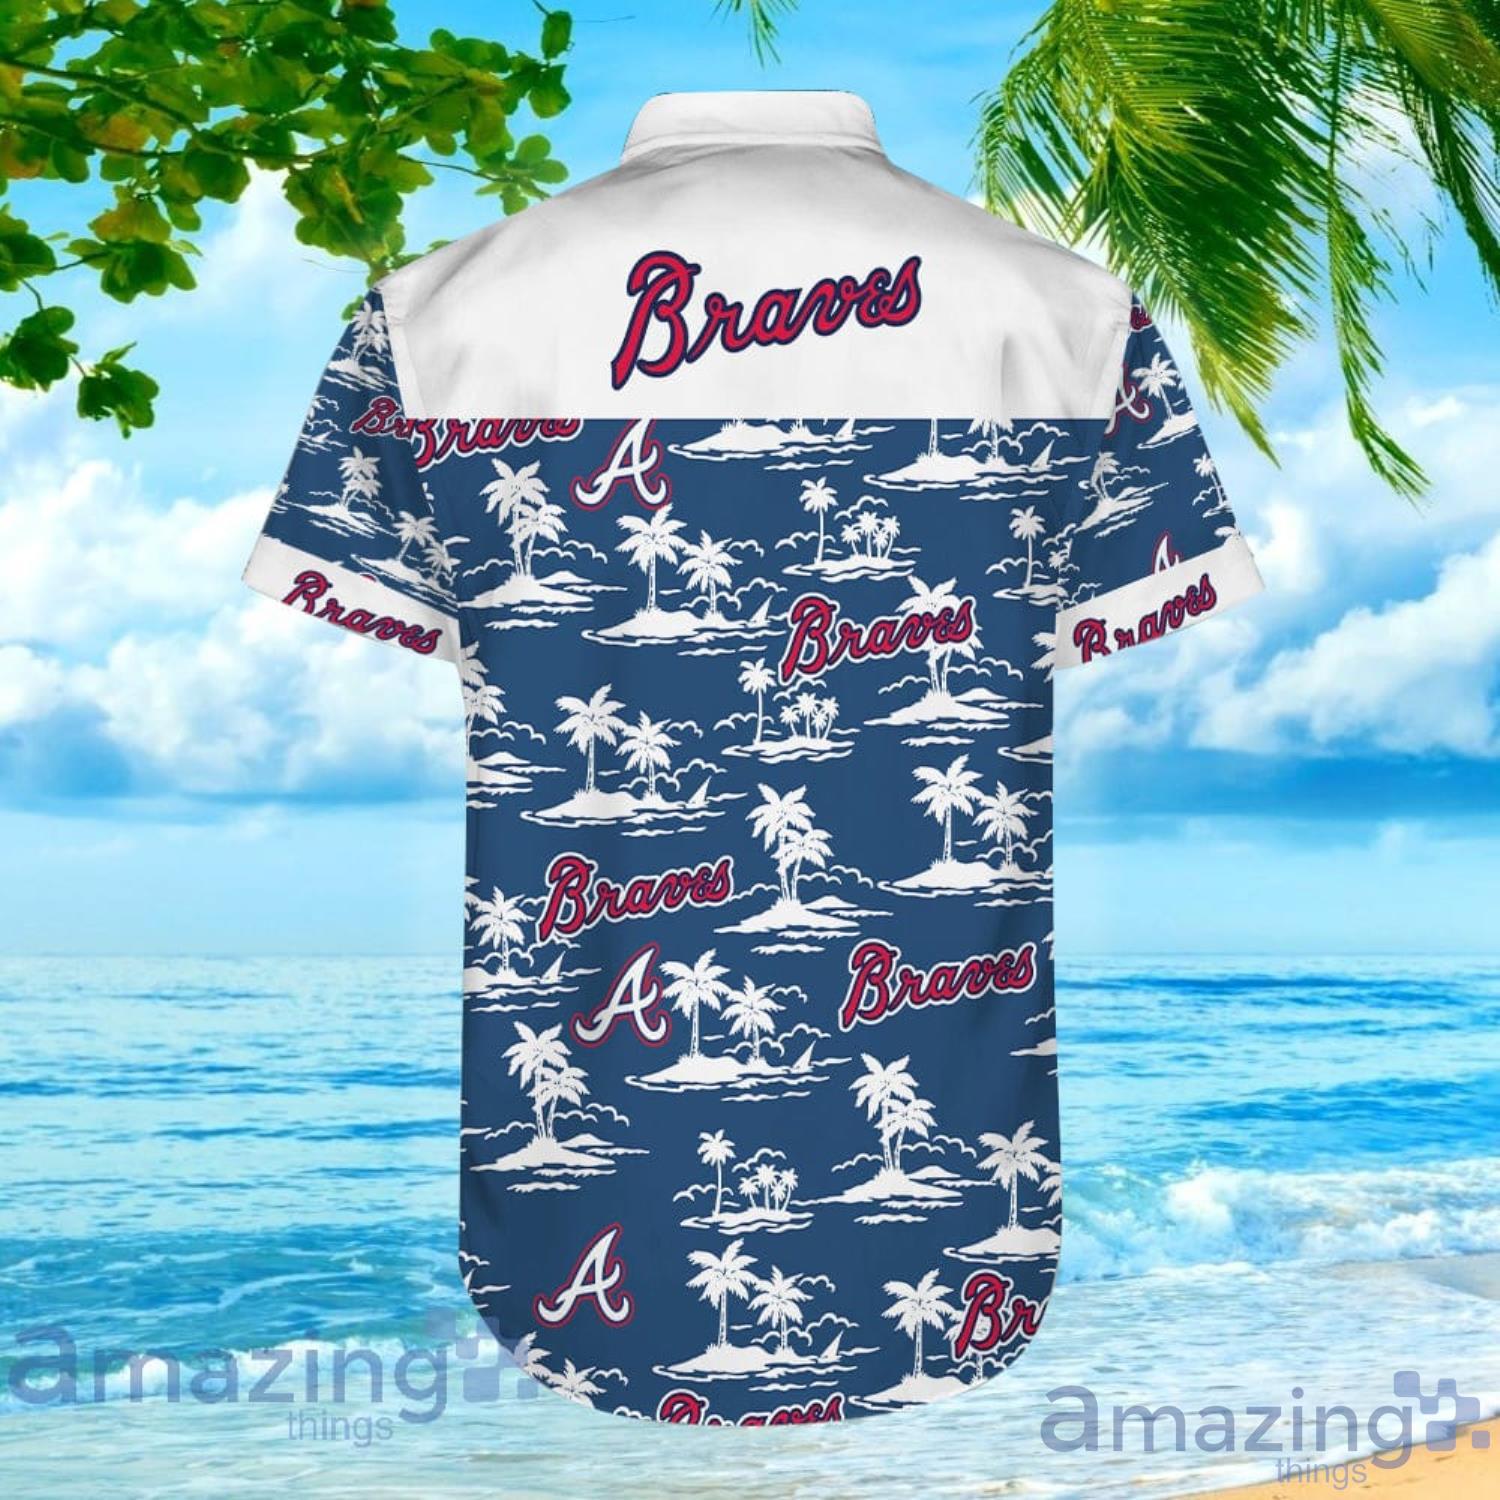 Men's Atlanta Braves Woven Dress Shirt